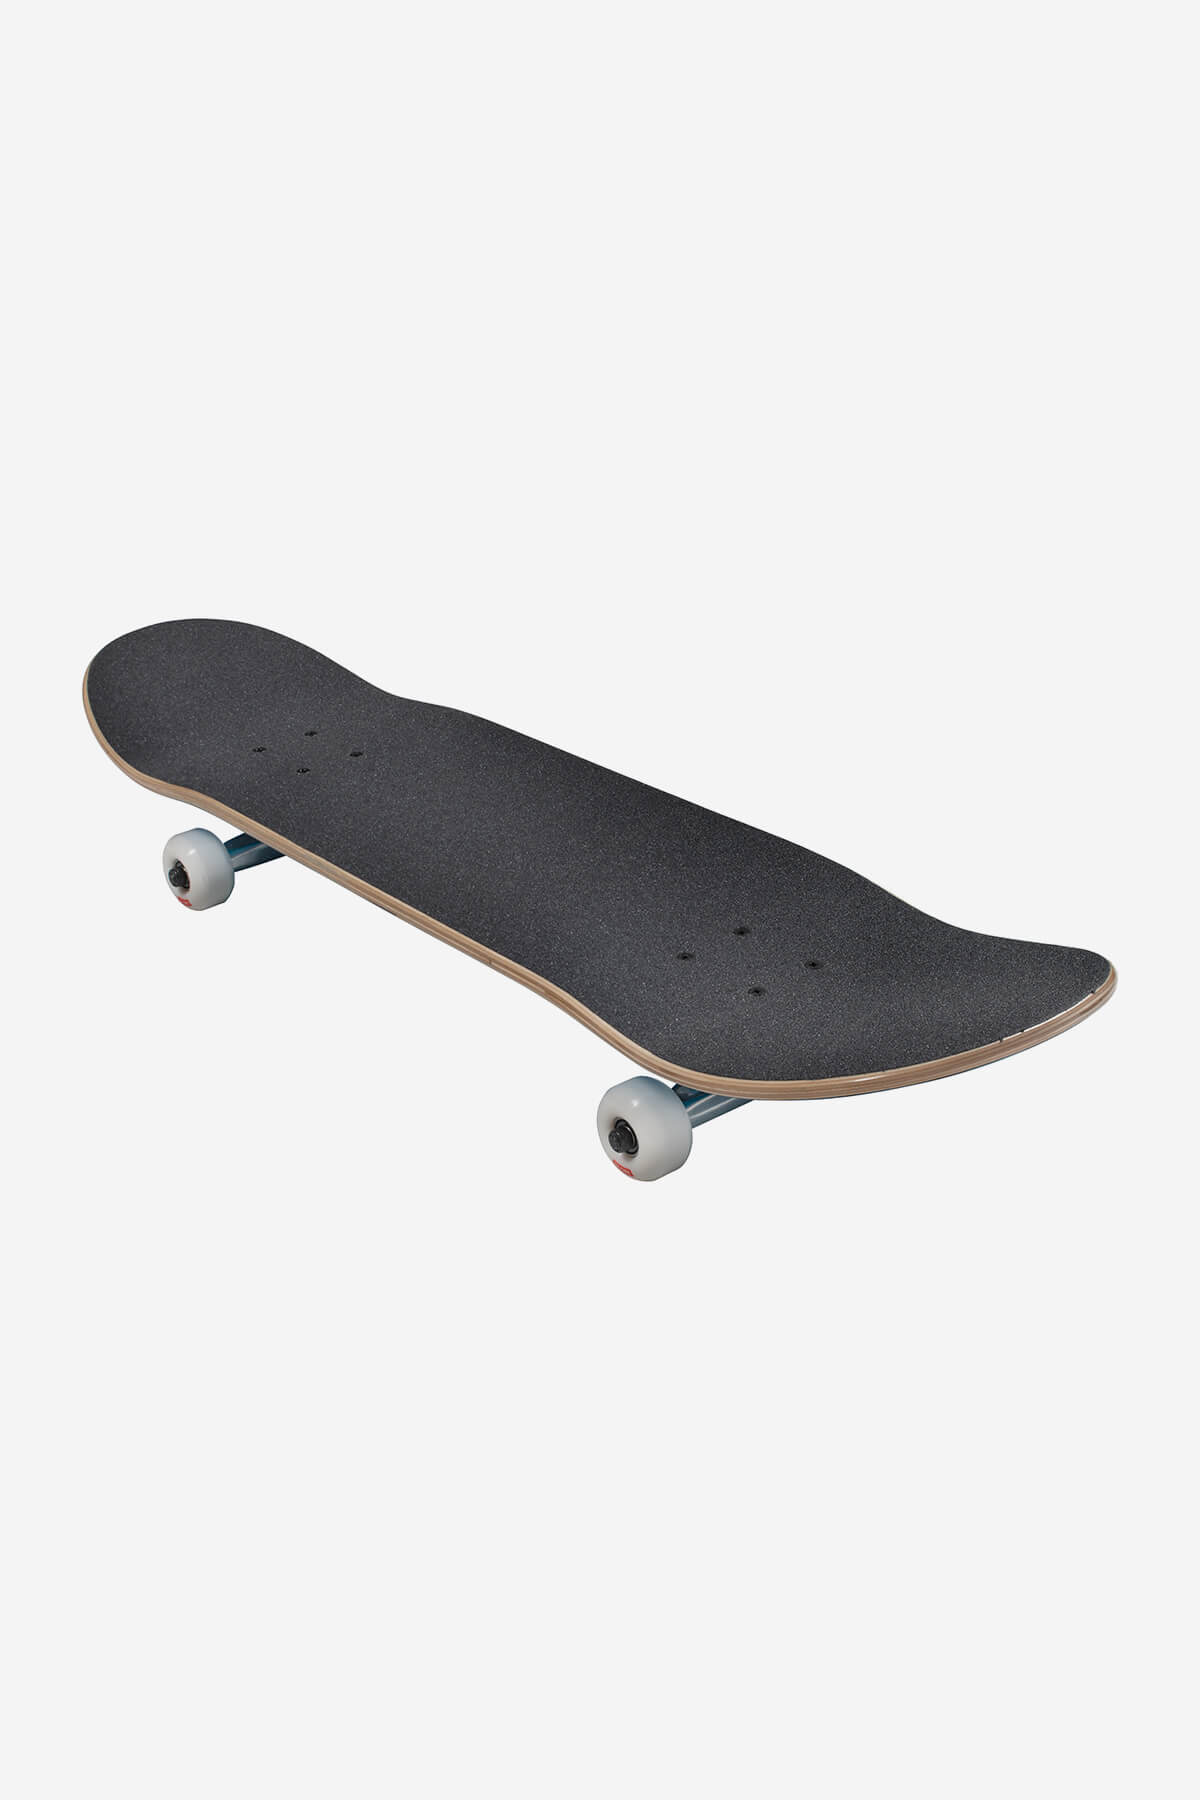 Globe Skateboard completa Goodstock 8.375" completo Skateboard in Neon Blue